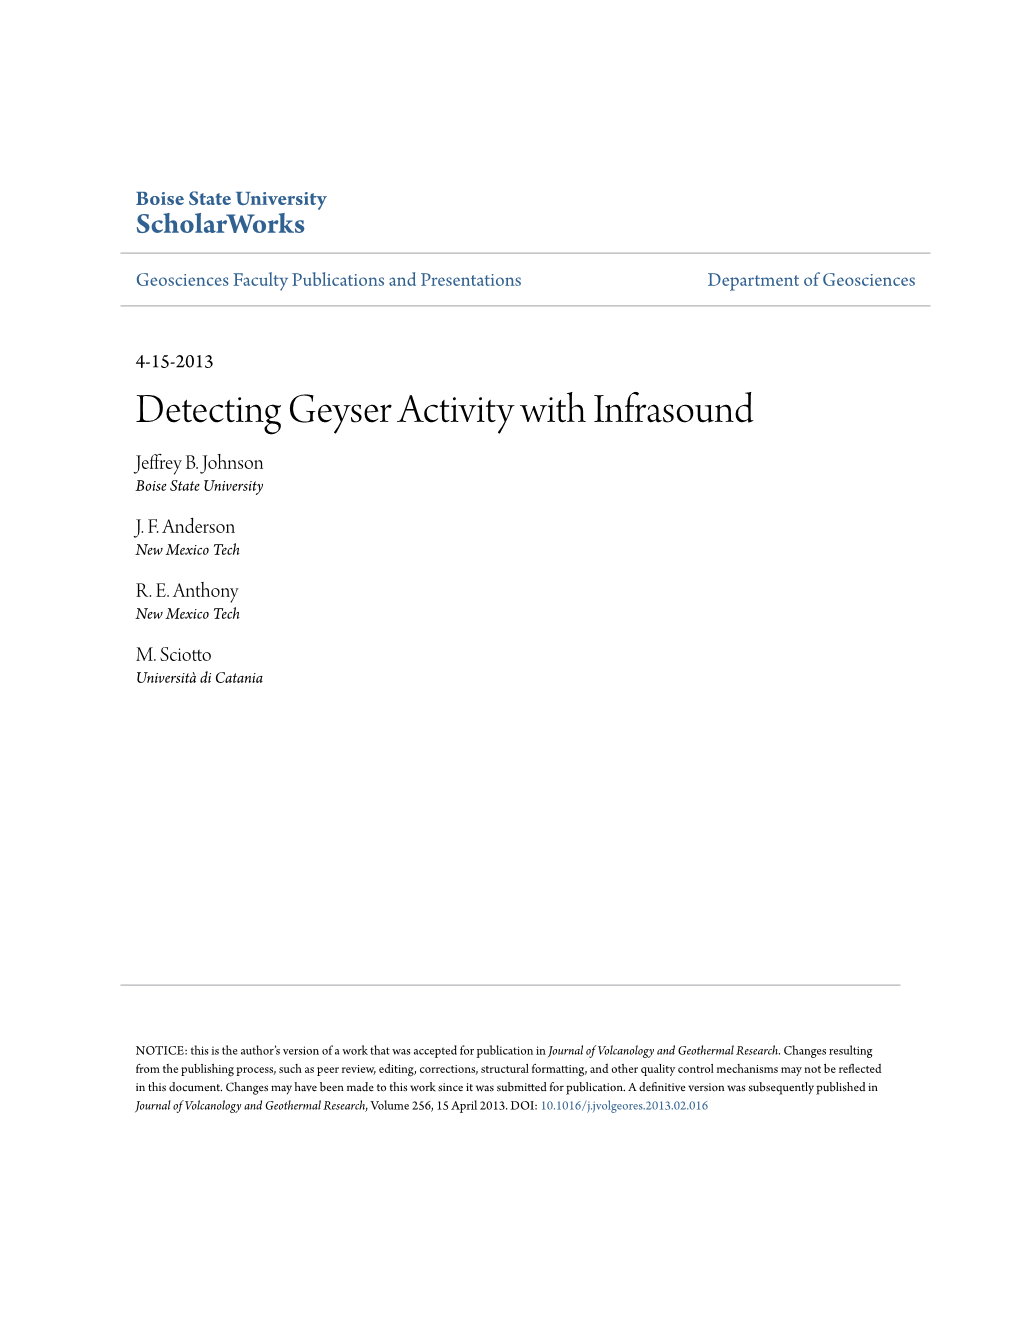 Detecting Geyser Activity with Infrasound Jeffrey B